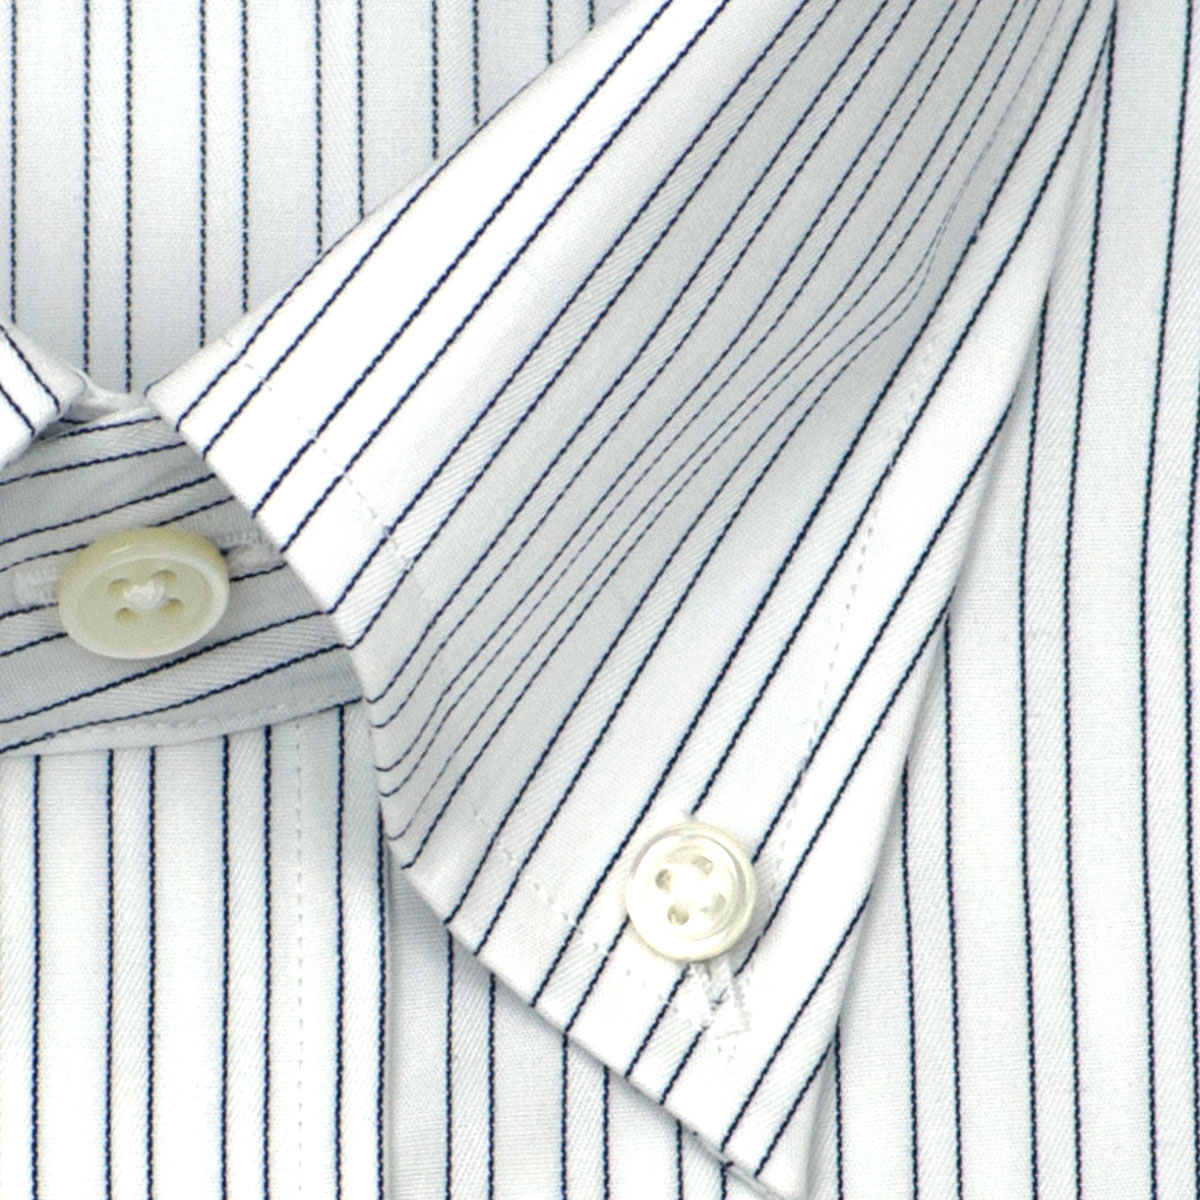 LORDSON Crest 長袖 ワイシャツ メンズ 形態安定 スリム ピンストライプ ボタンダウン 綿100% ホワイト 高級 上質 (zod164-455) 2206CL